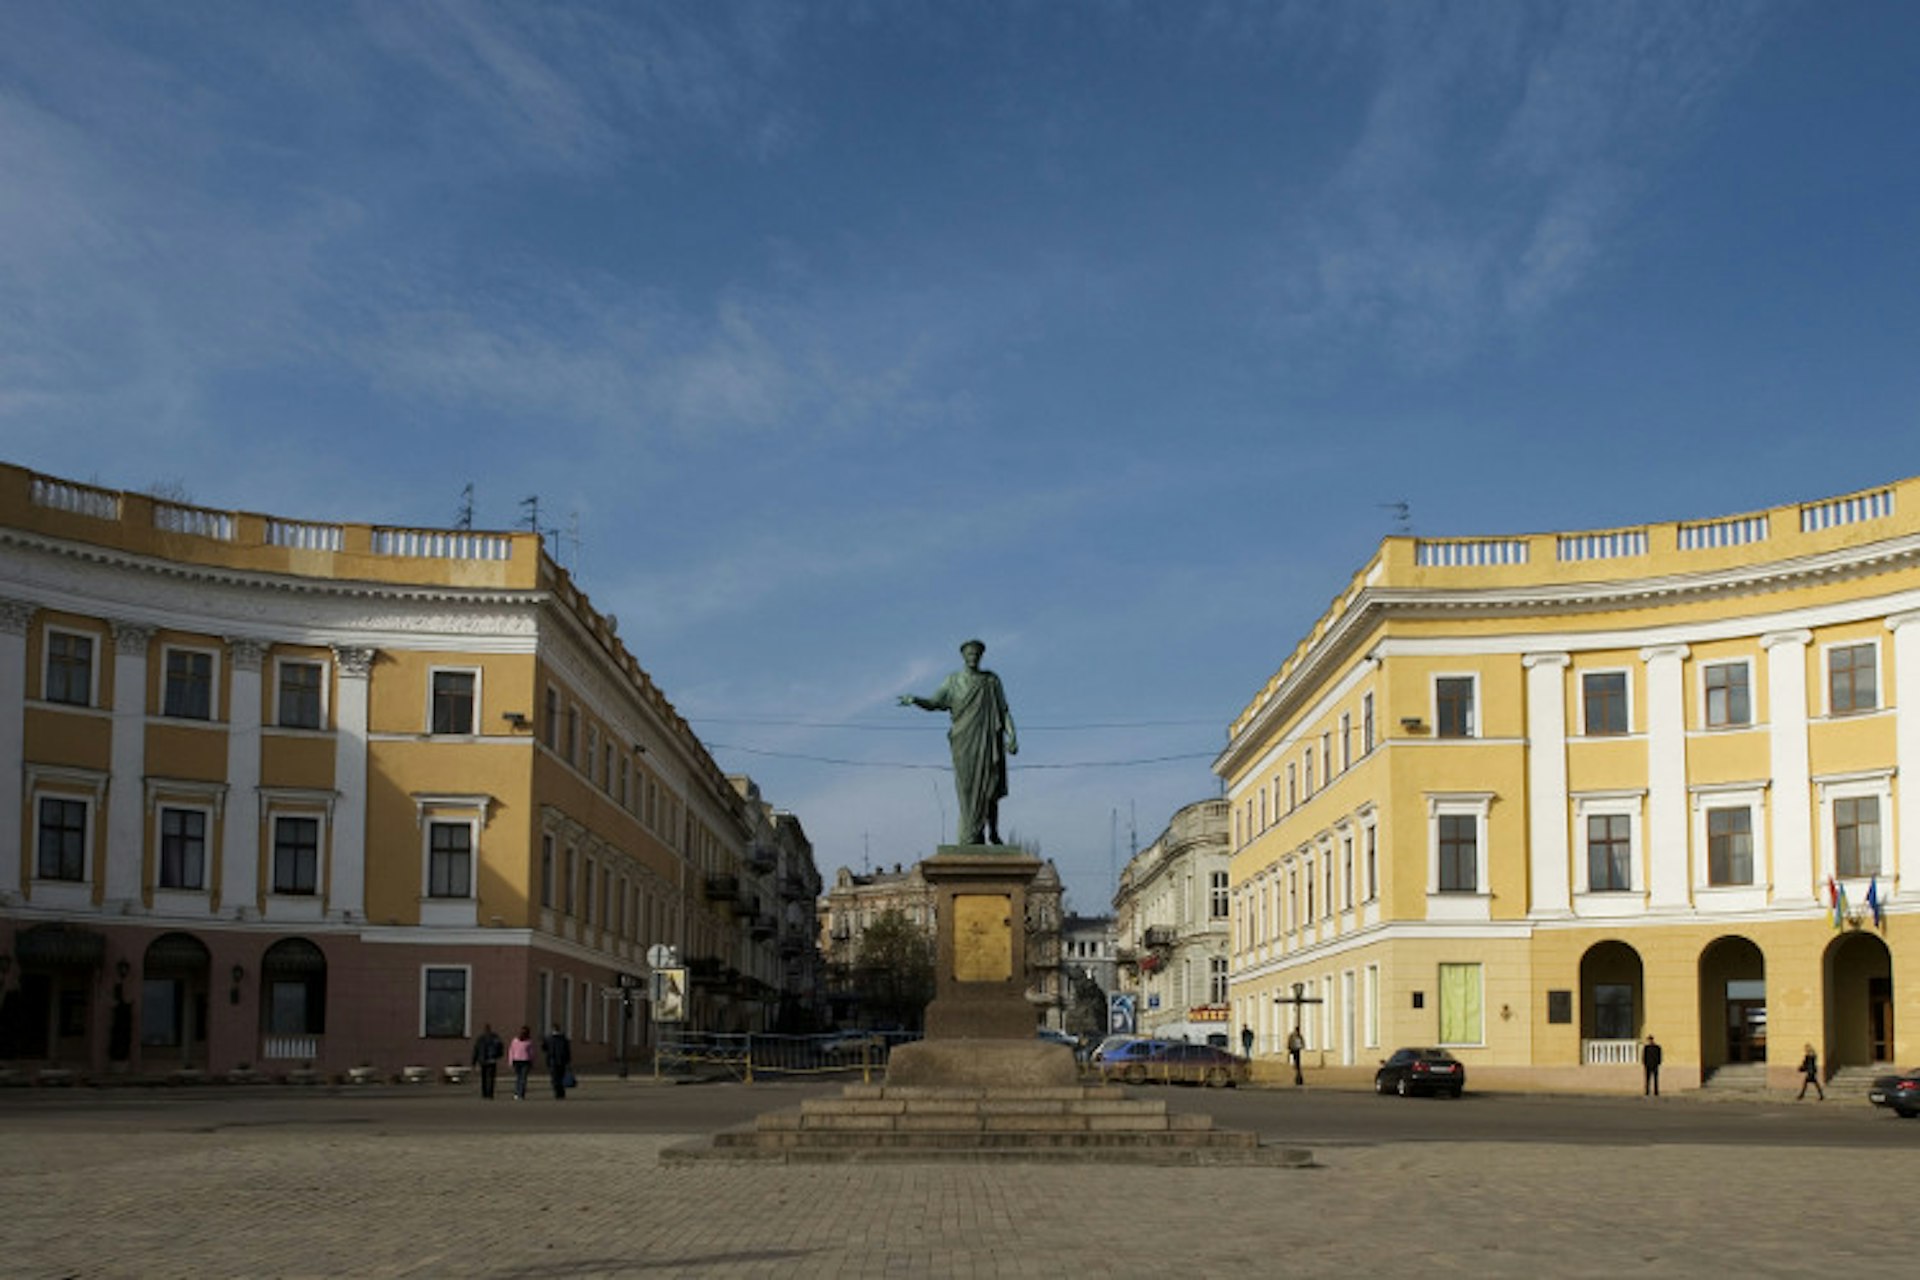 Duc de Richelieu statue at bul Prymorsky. Image by Wojtek Buss / Getty Images